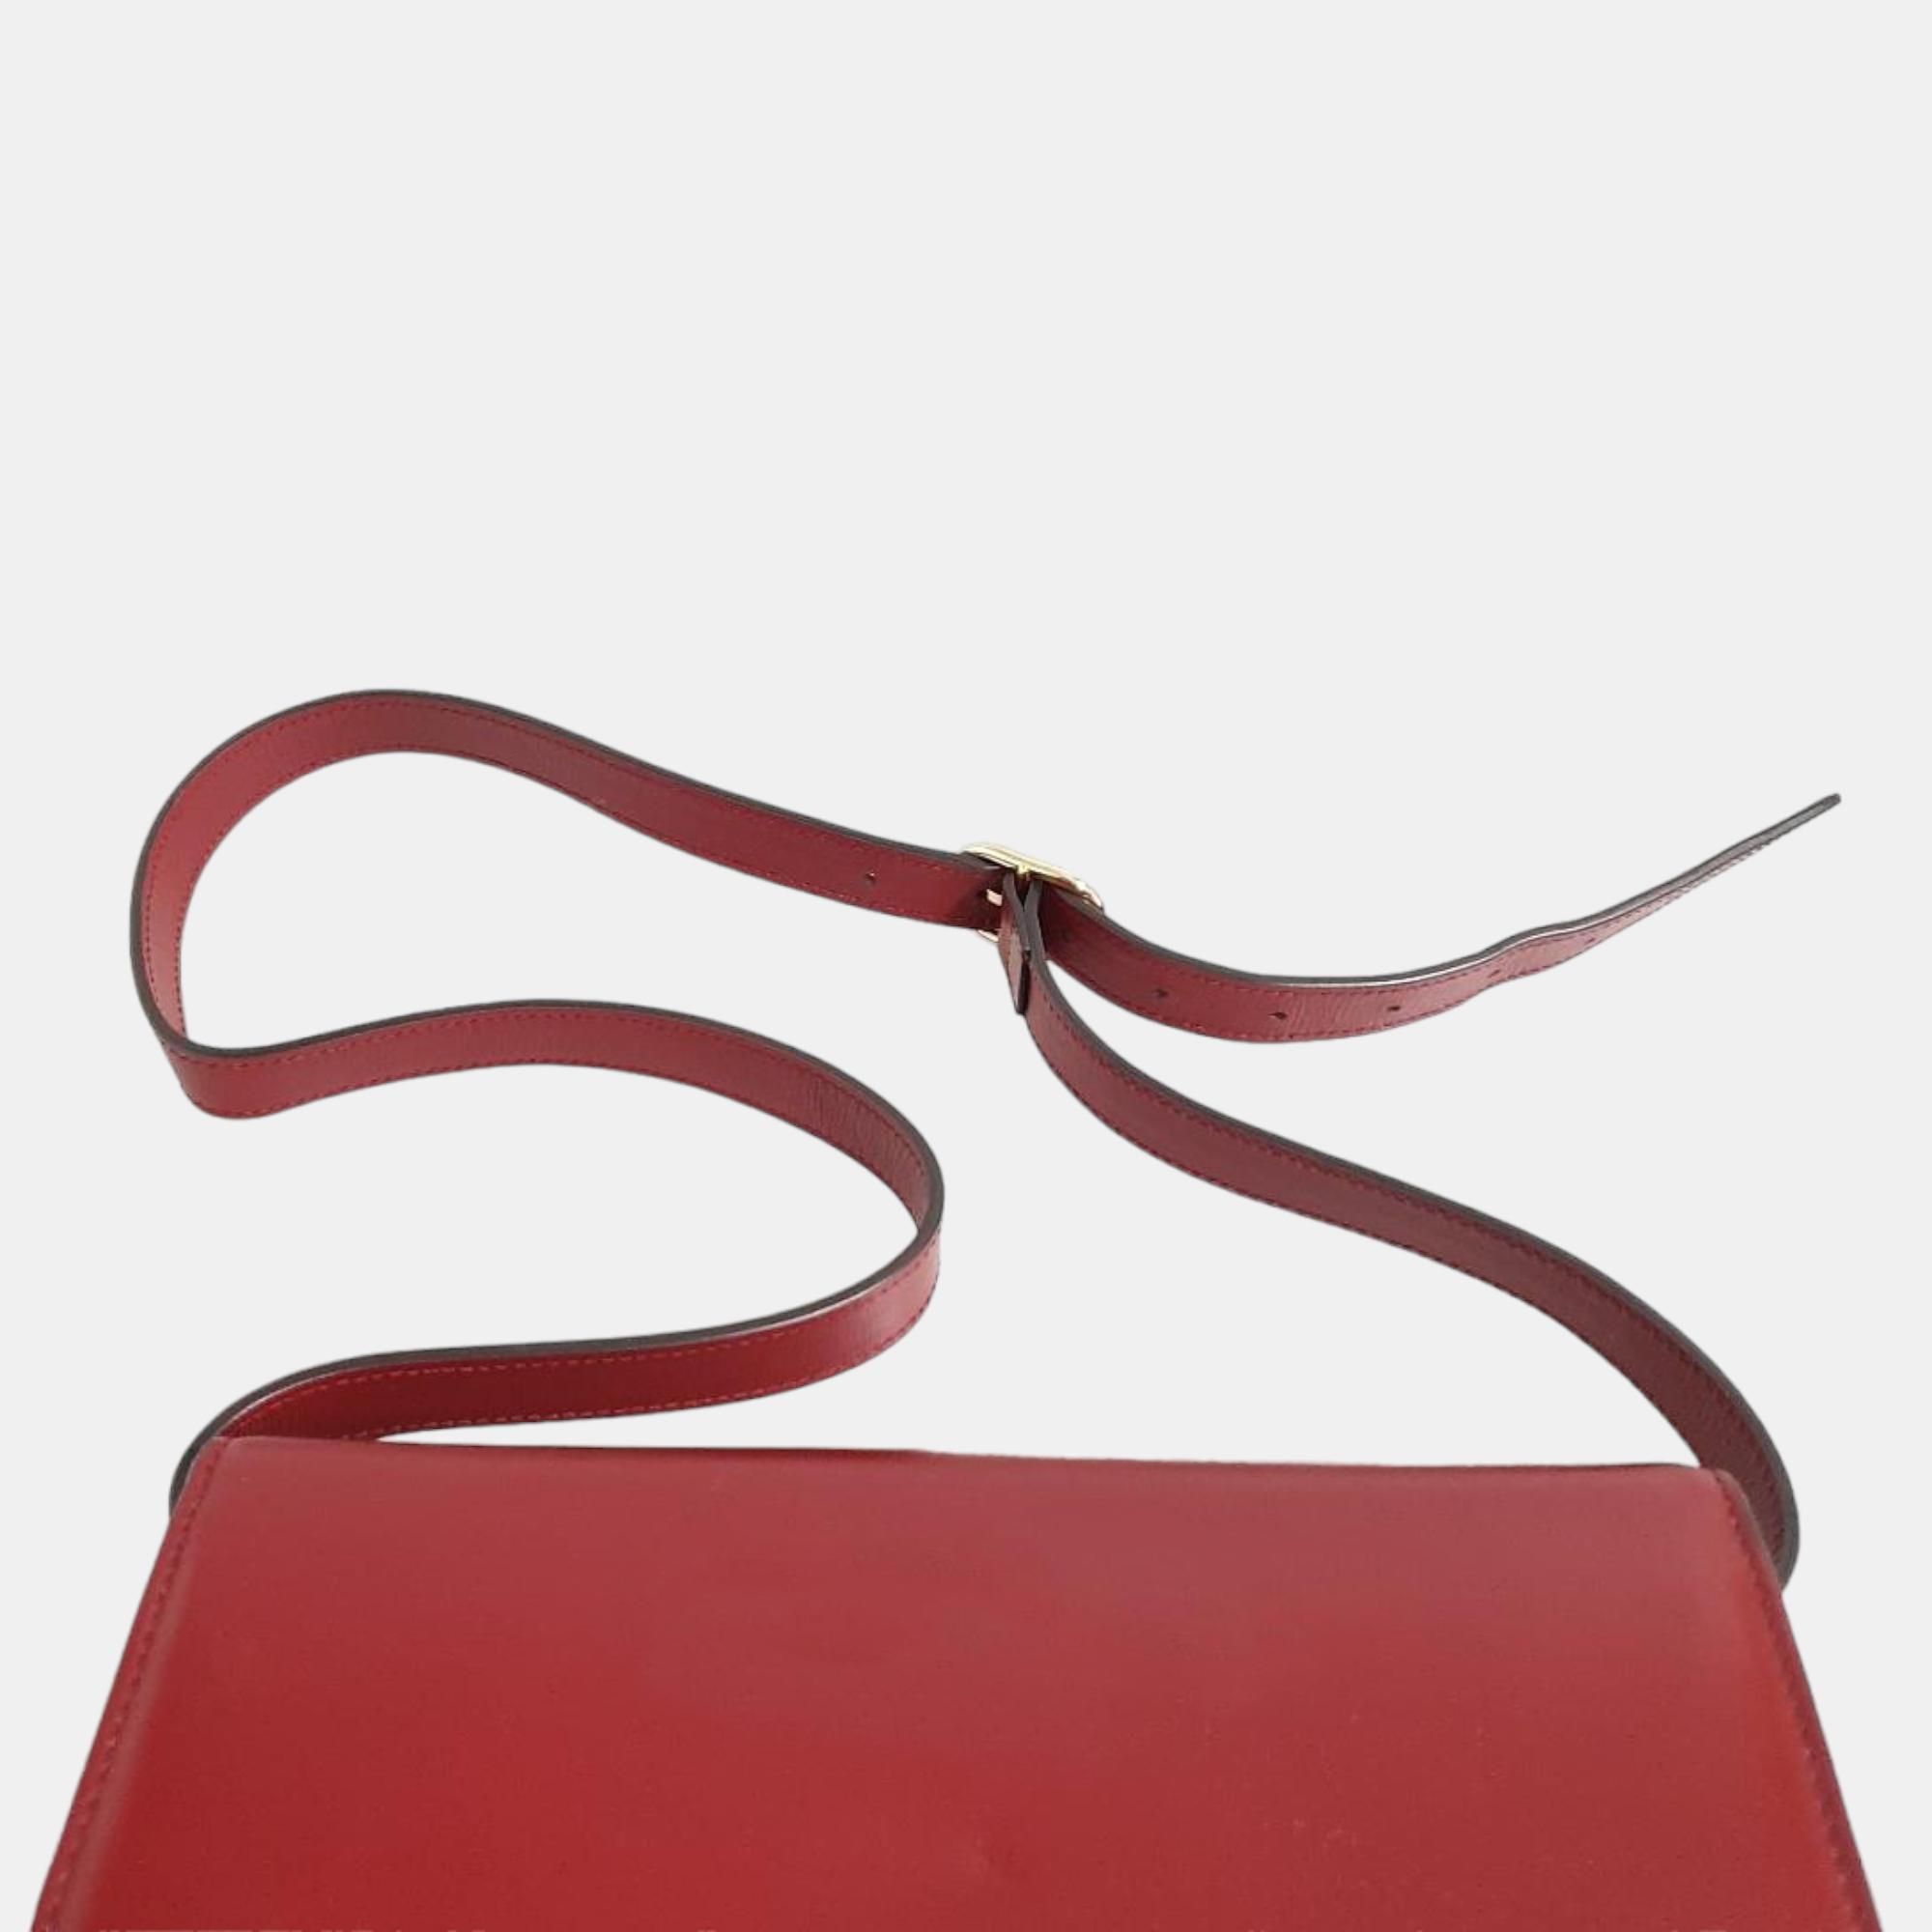 Gucci Burgundy Leather Shoulder Bag (589474)